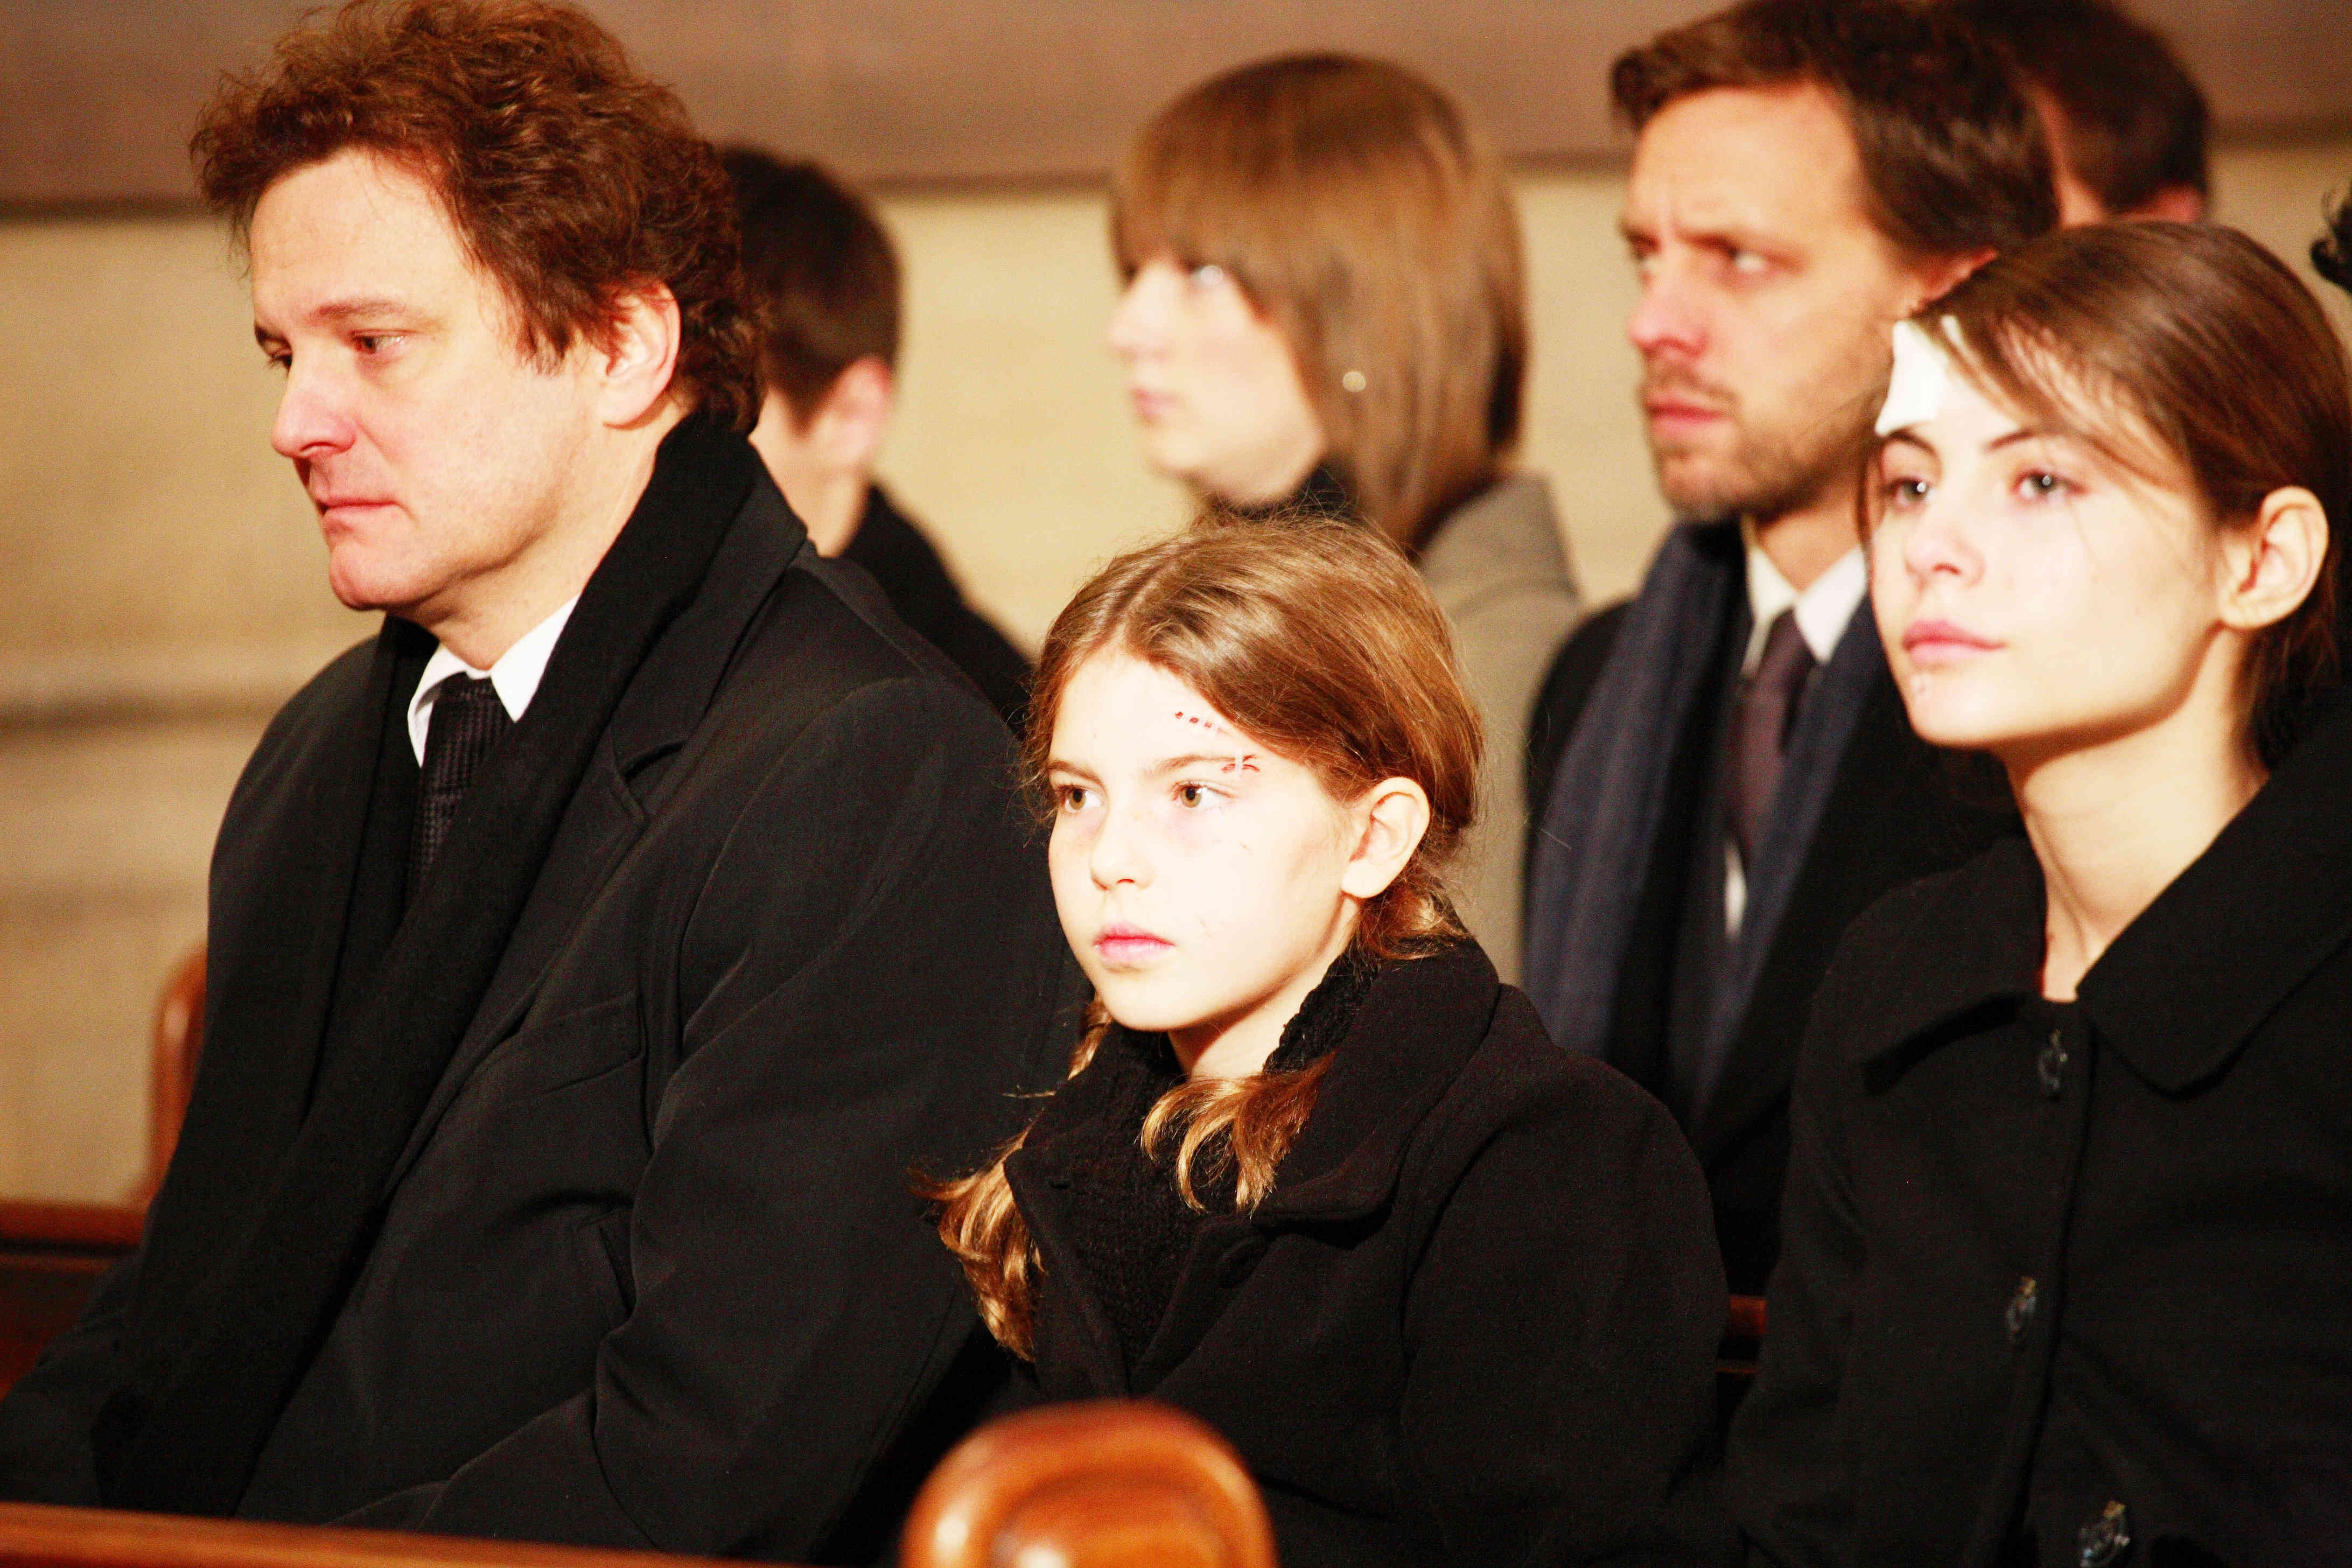 Colin Firth, Perla Haney-Jardine and Willa Holland in E1 Entertainment's Summer in Genoa, A (2009)